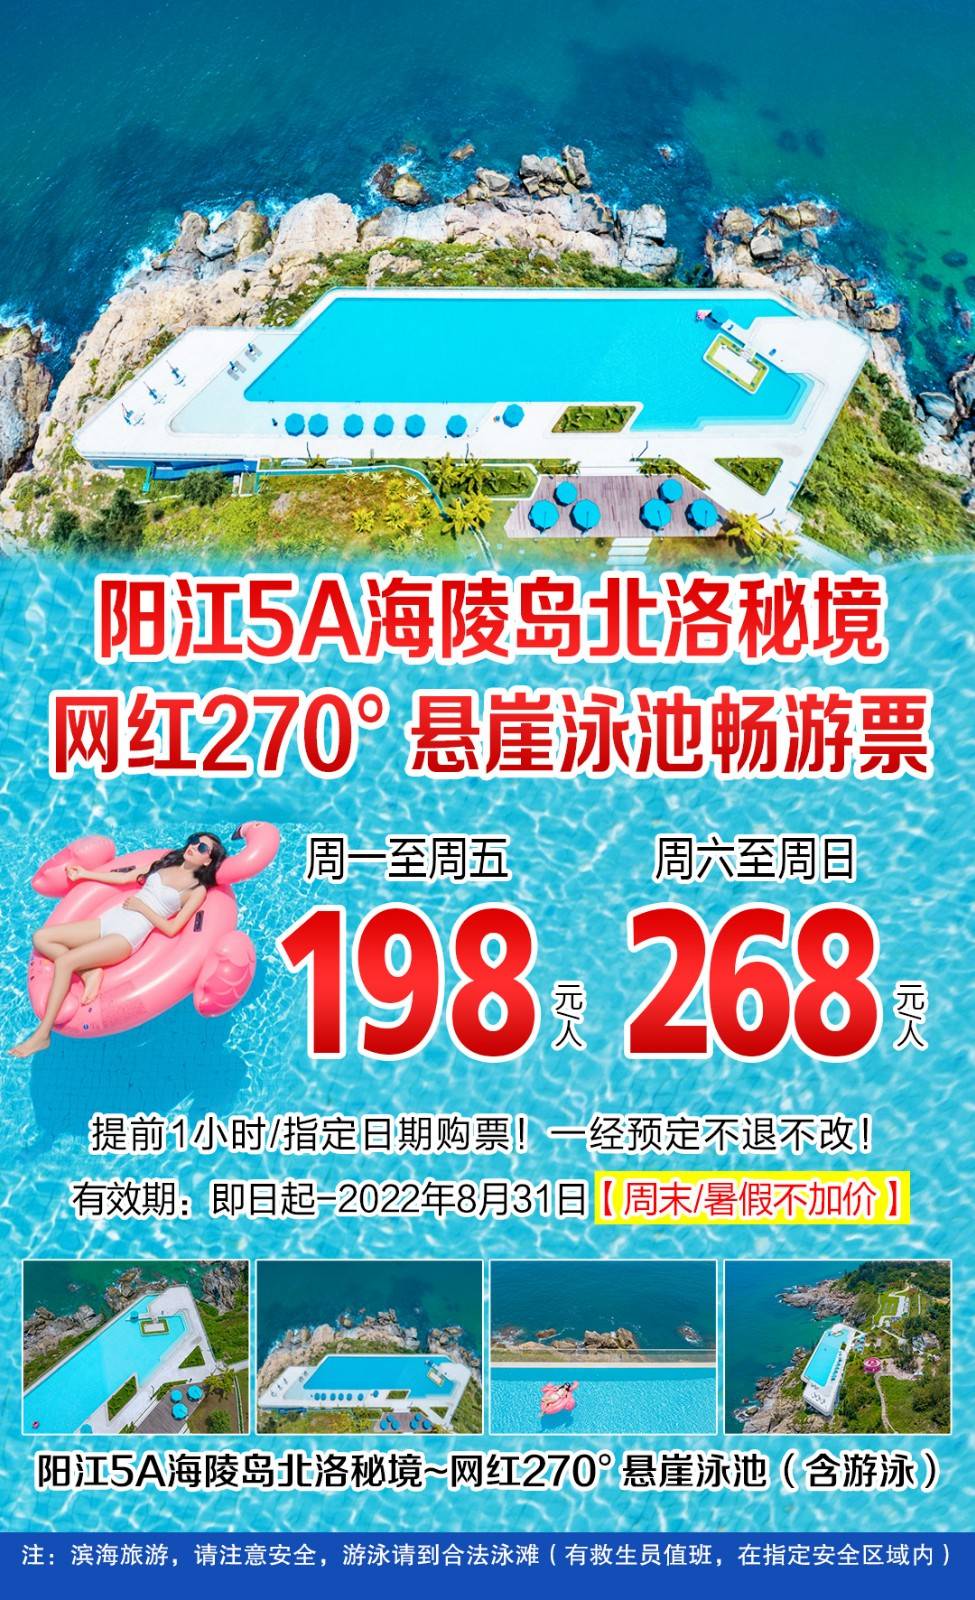 【提前一小时，指定日期预订】阳江5A海陵岛北洛秘境悬崖泳池畅玩票（有效期至2022年8月31日）